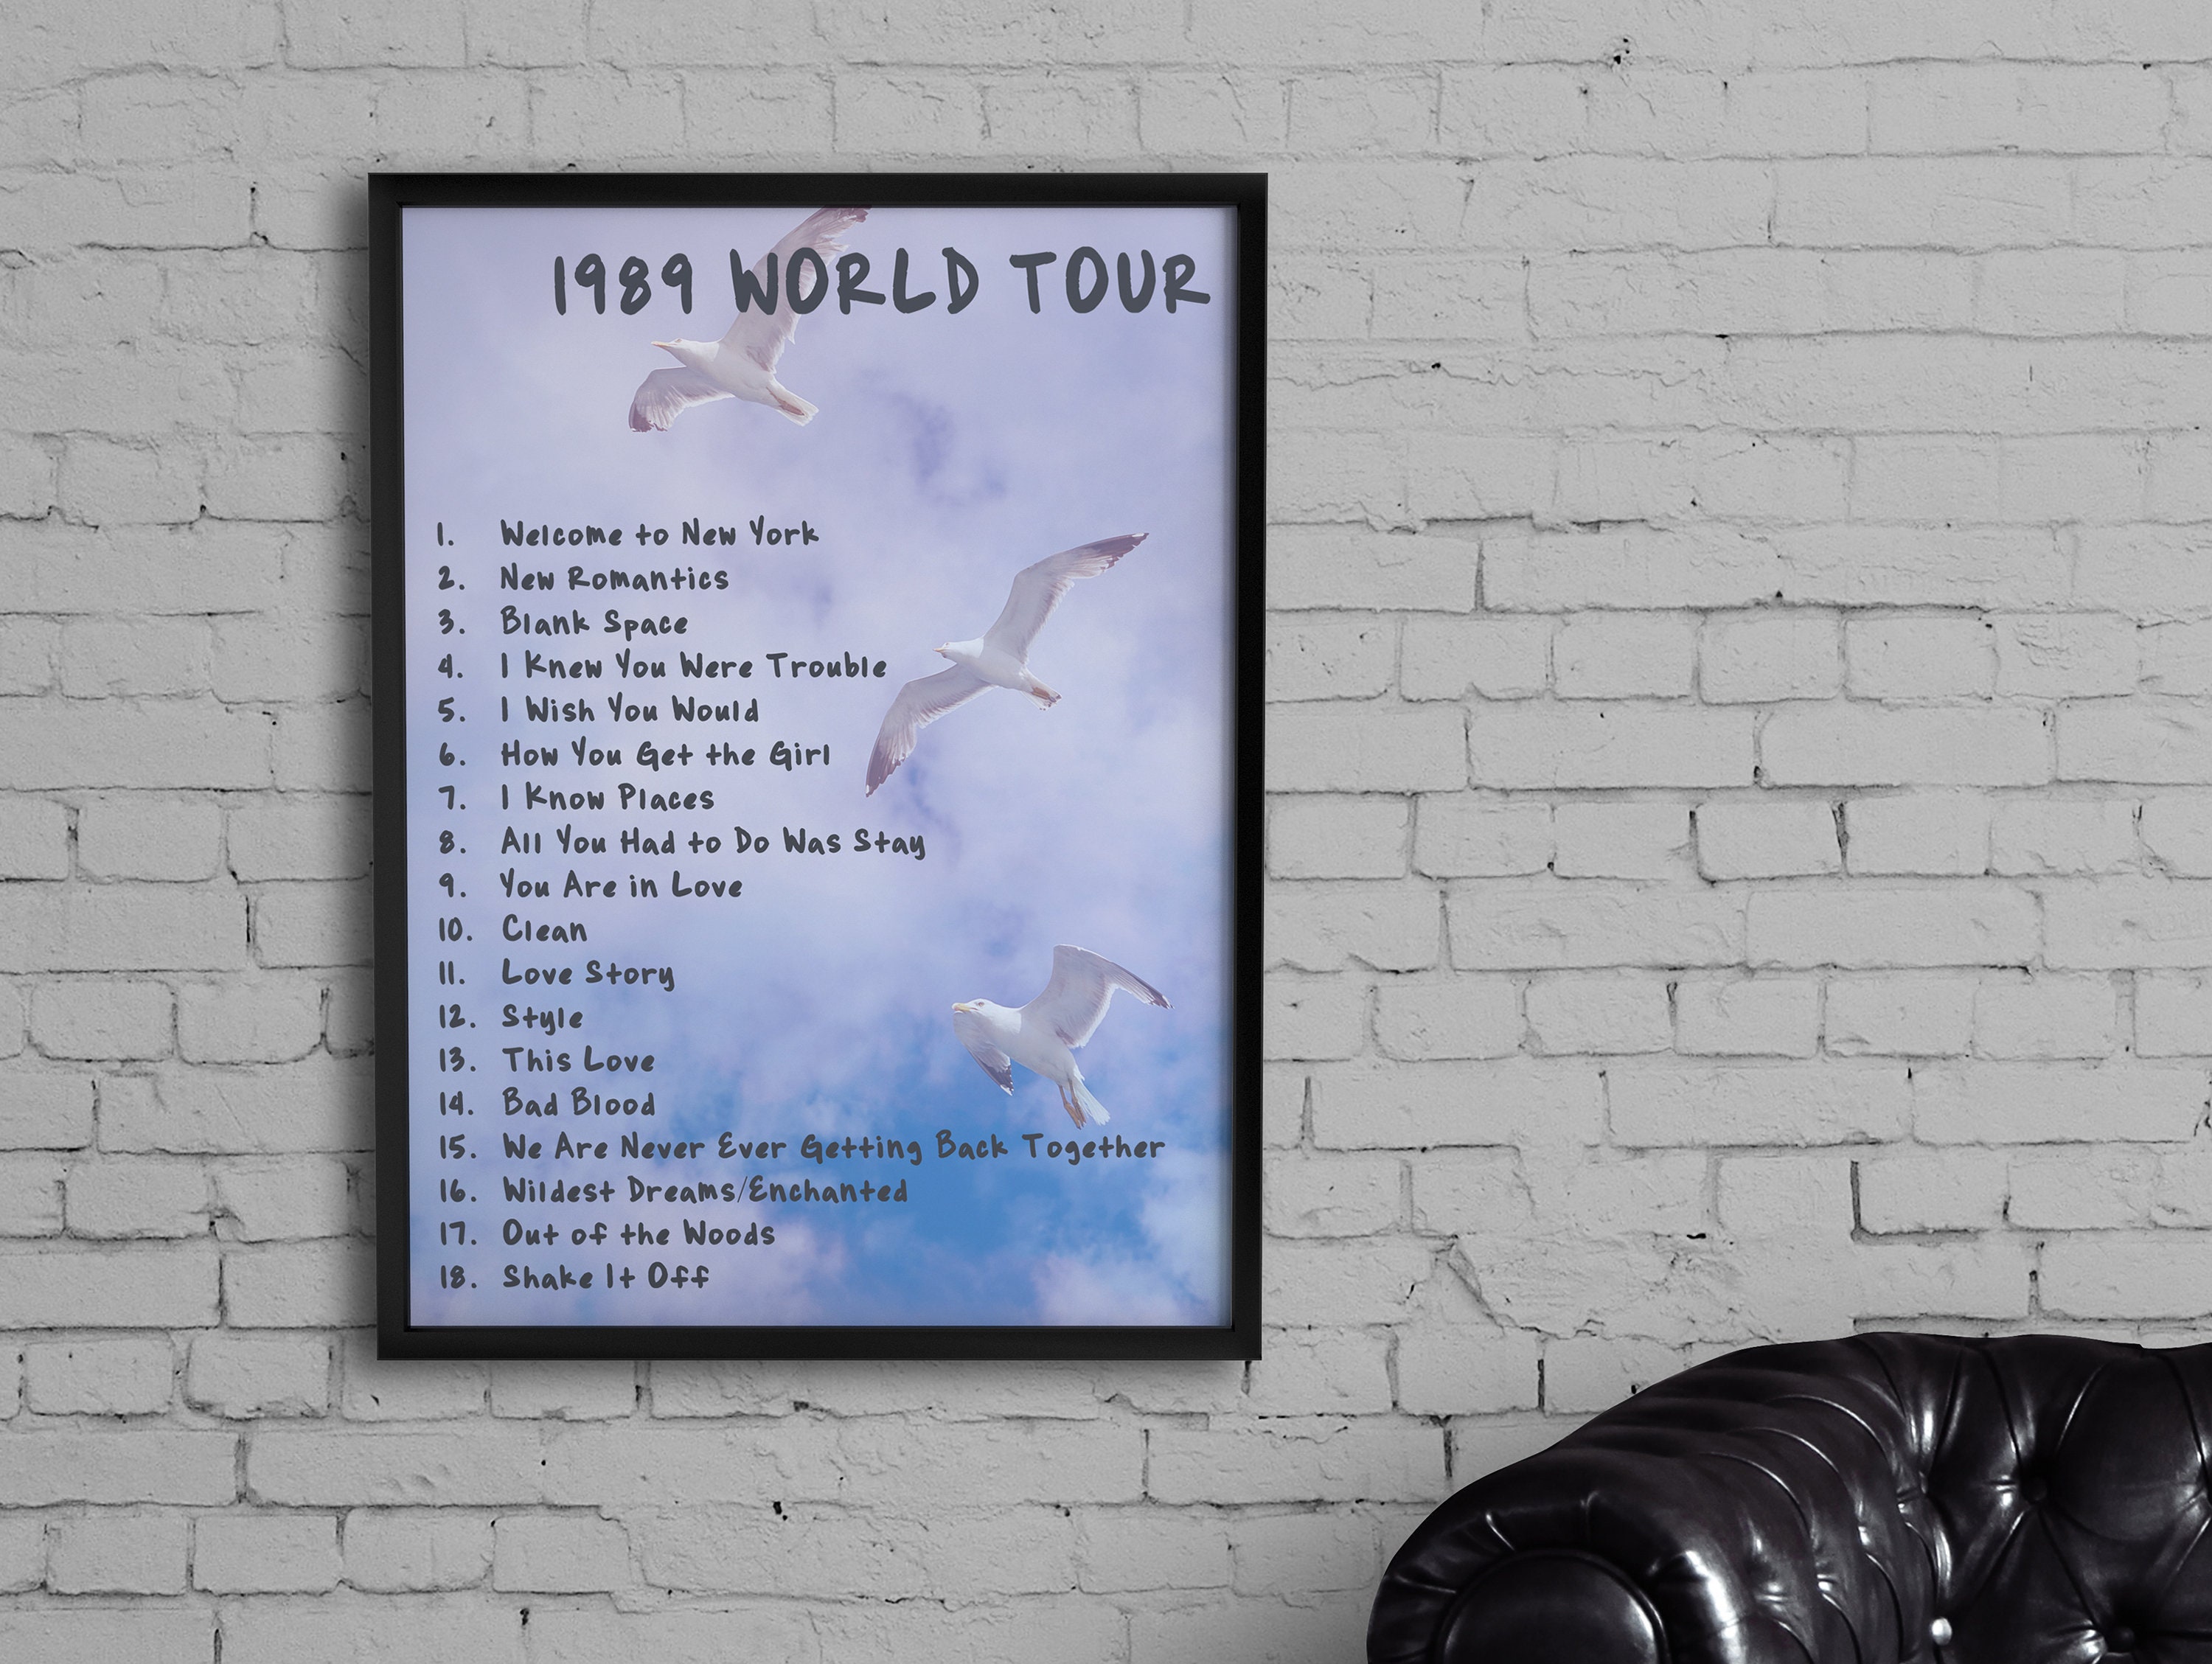 1989 world tour schedule